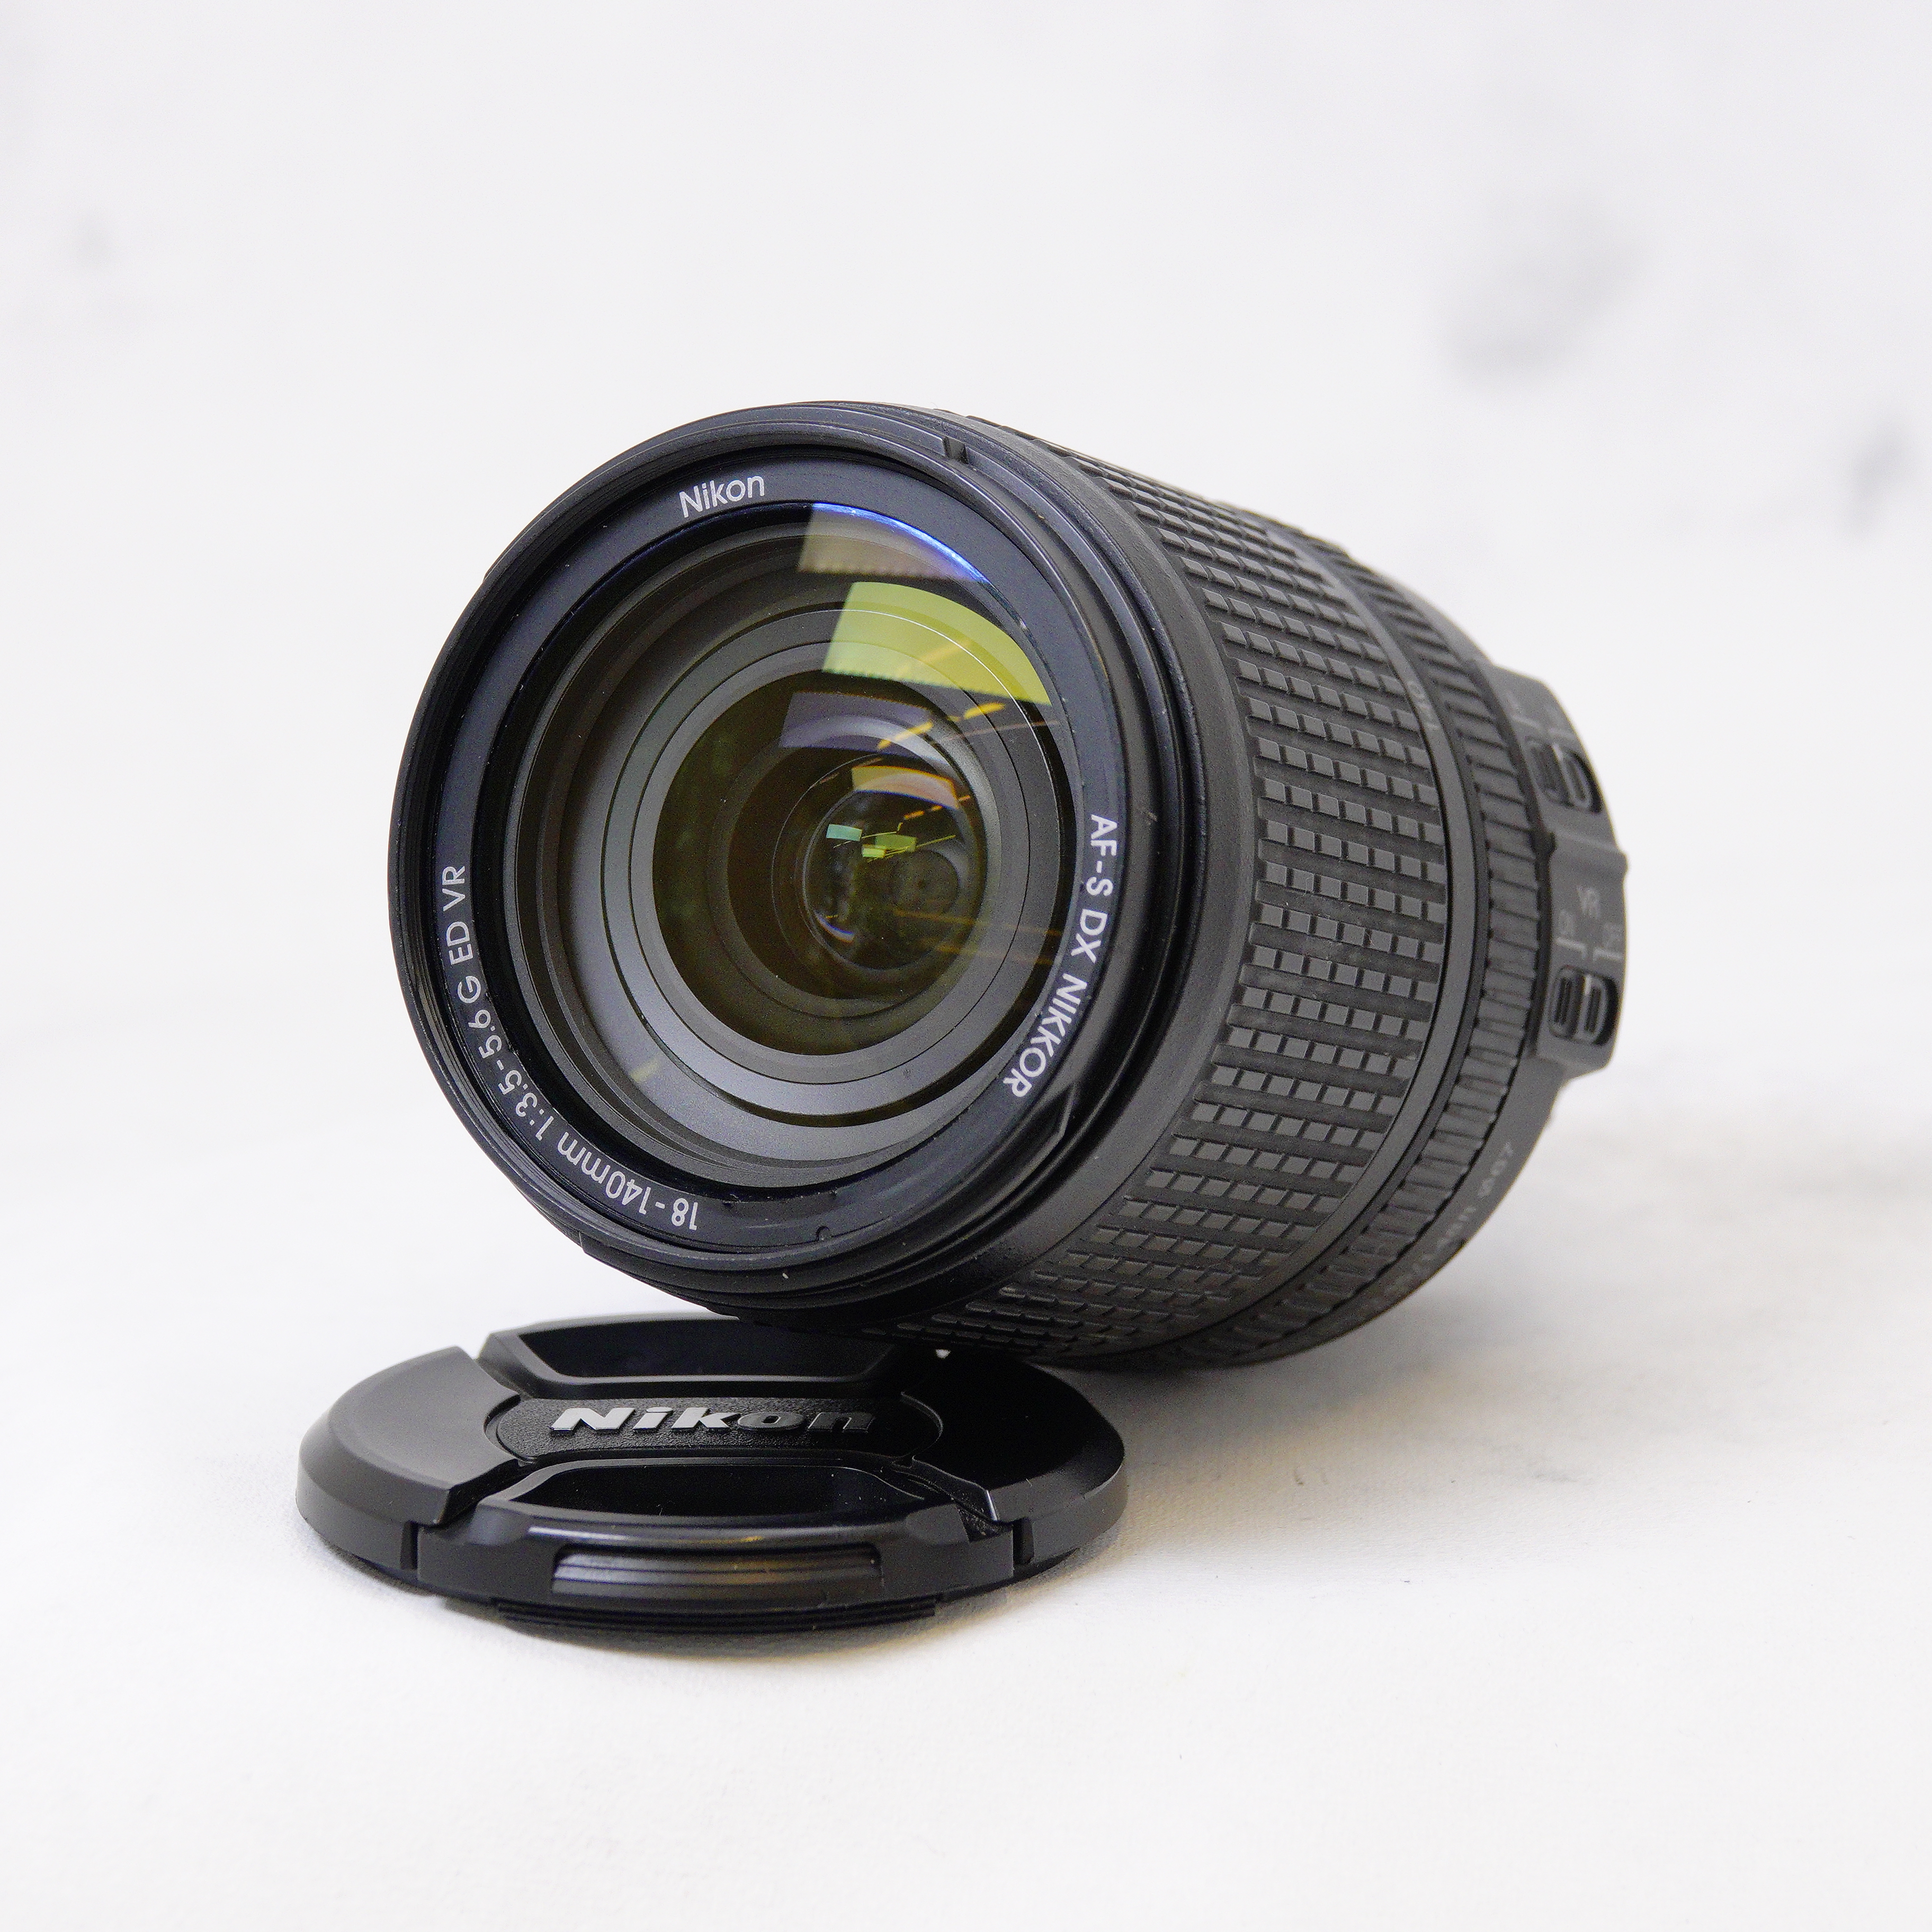 Nikon AF-S DX NIKKOR 18-140mm f/3.5-5.6G ED VR - Usado